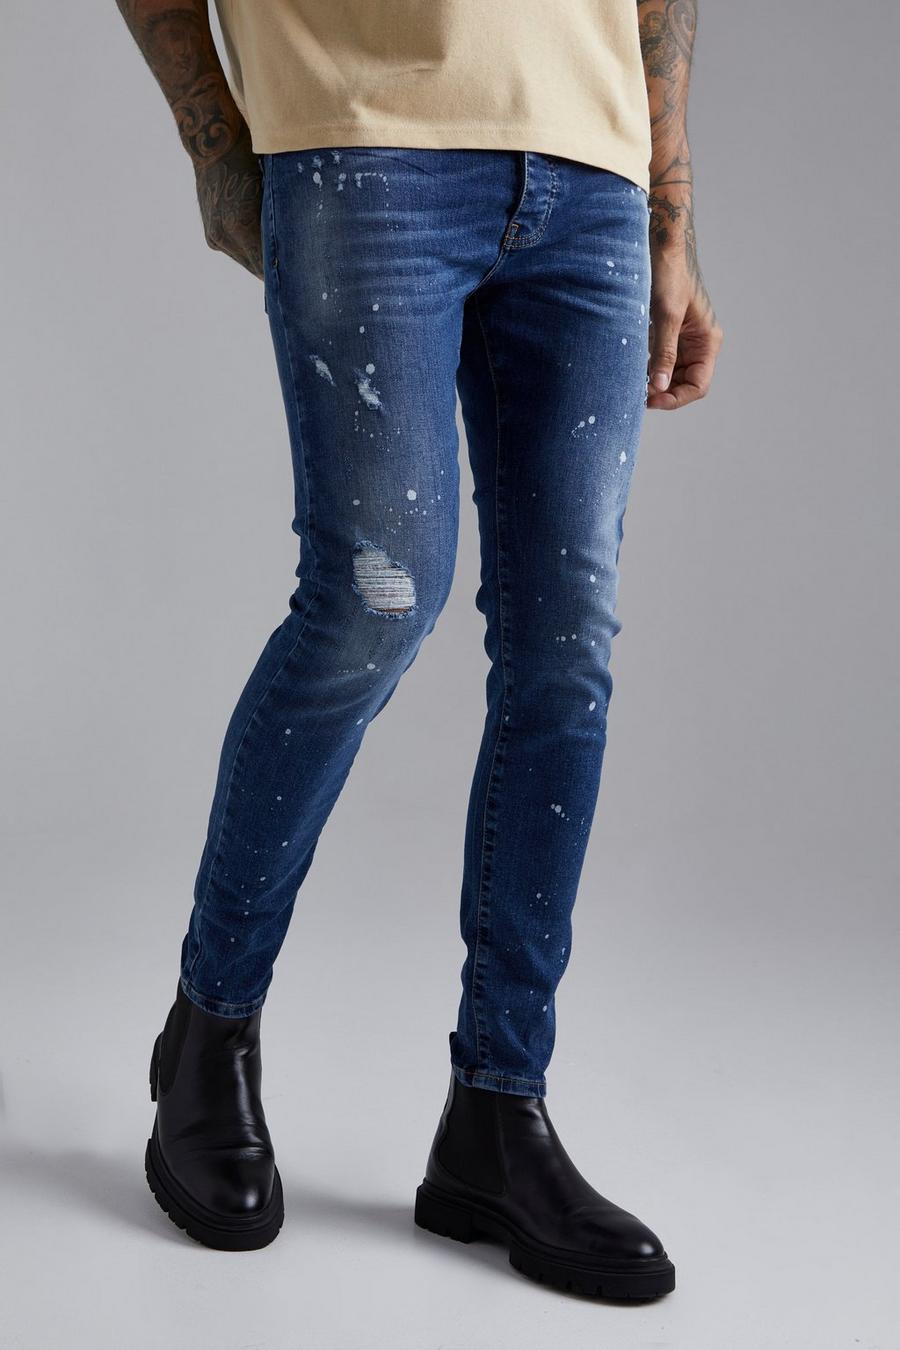 Jeans Skinny Fit Stretch con strappi e borchie, Mid blue azzurro